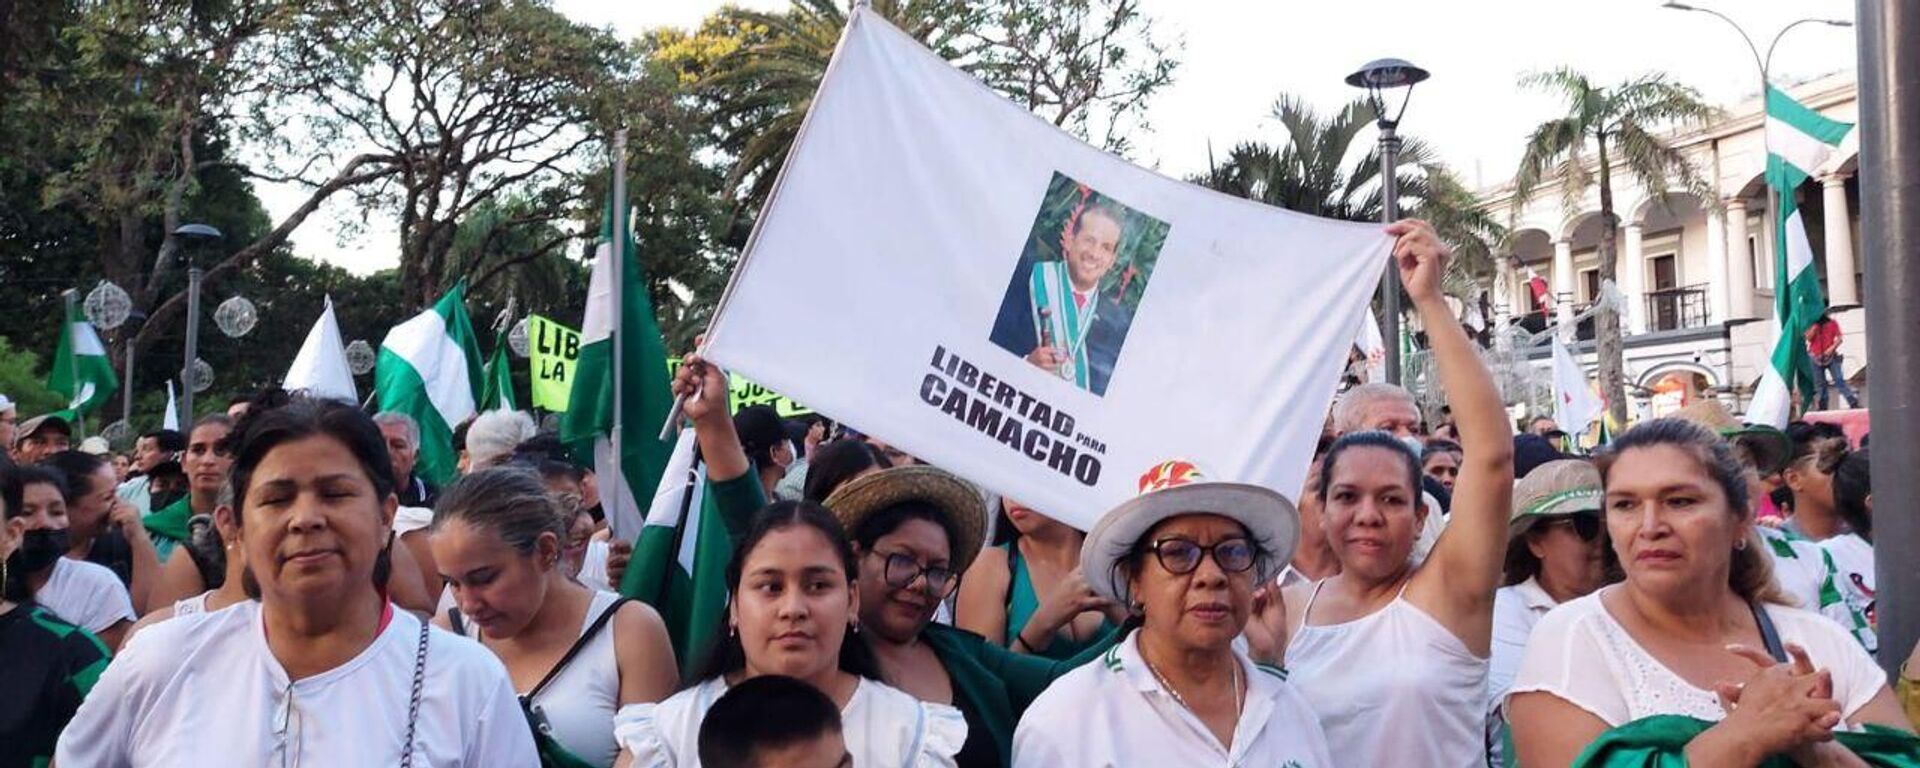 Con carteles con la foto del gobernador de Santa Cruz, los seguidores del gobernador Luis Fernando Camacho pidieron su liberación - Sputnik Mundo, 1920, 11.01.2023